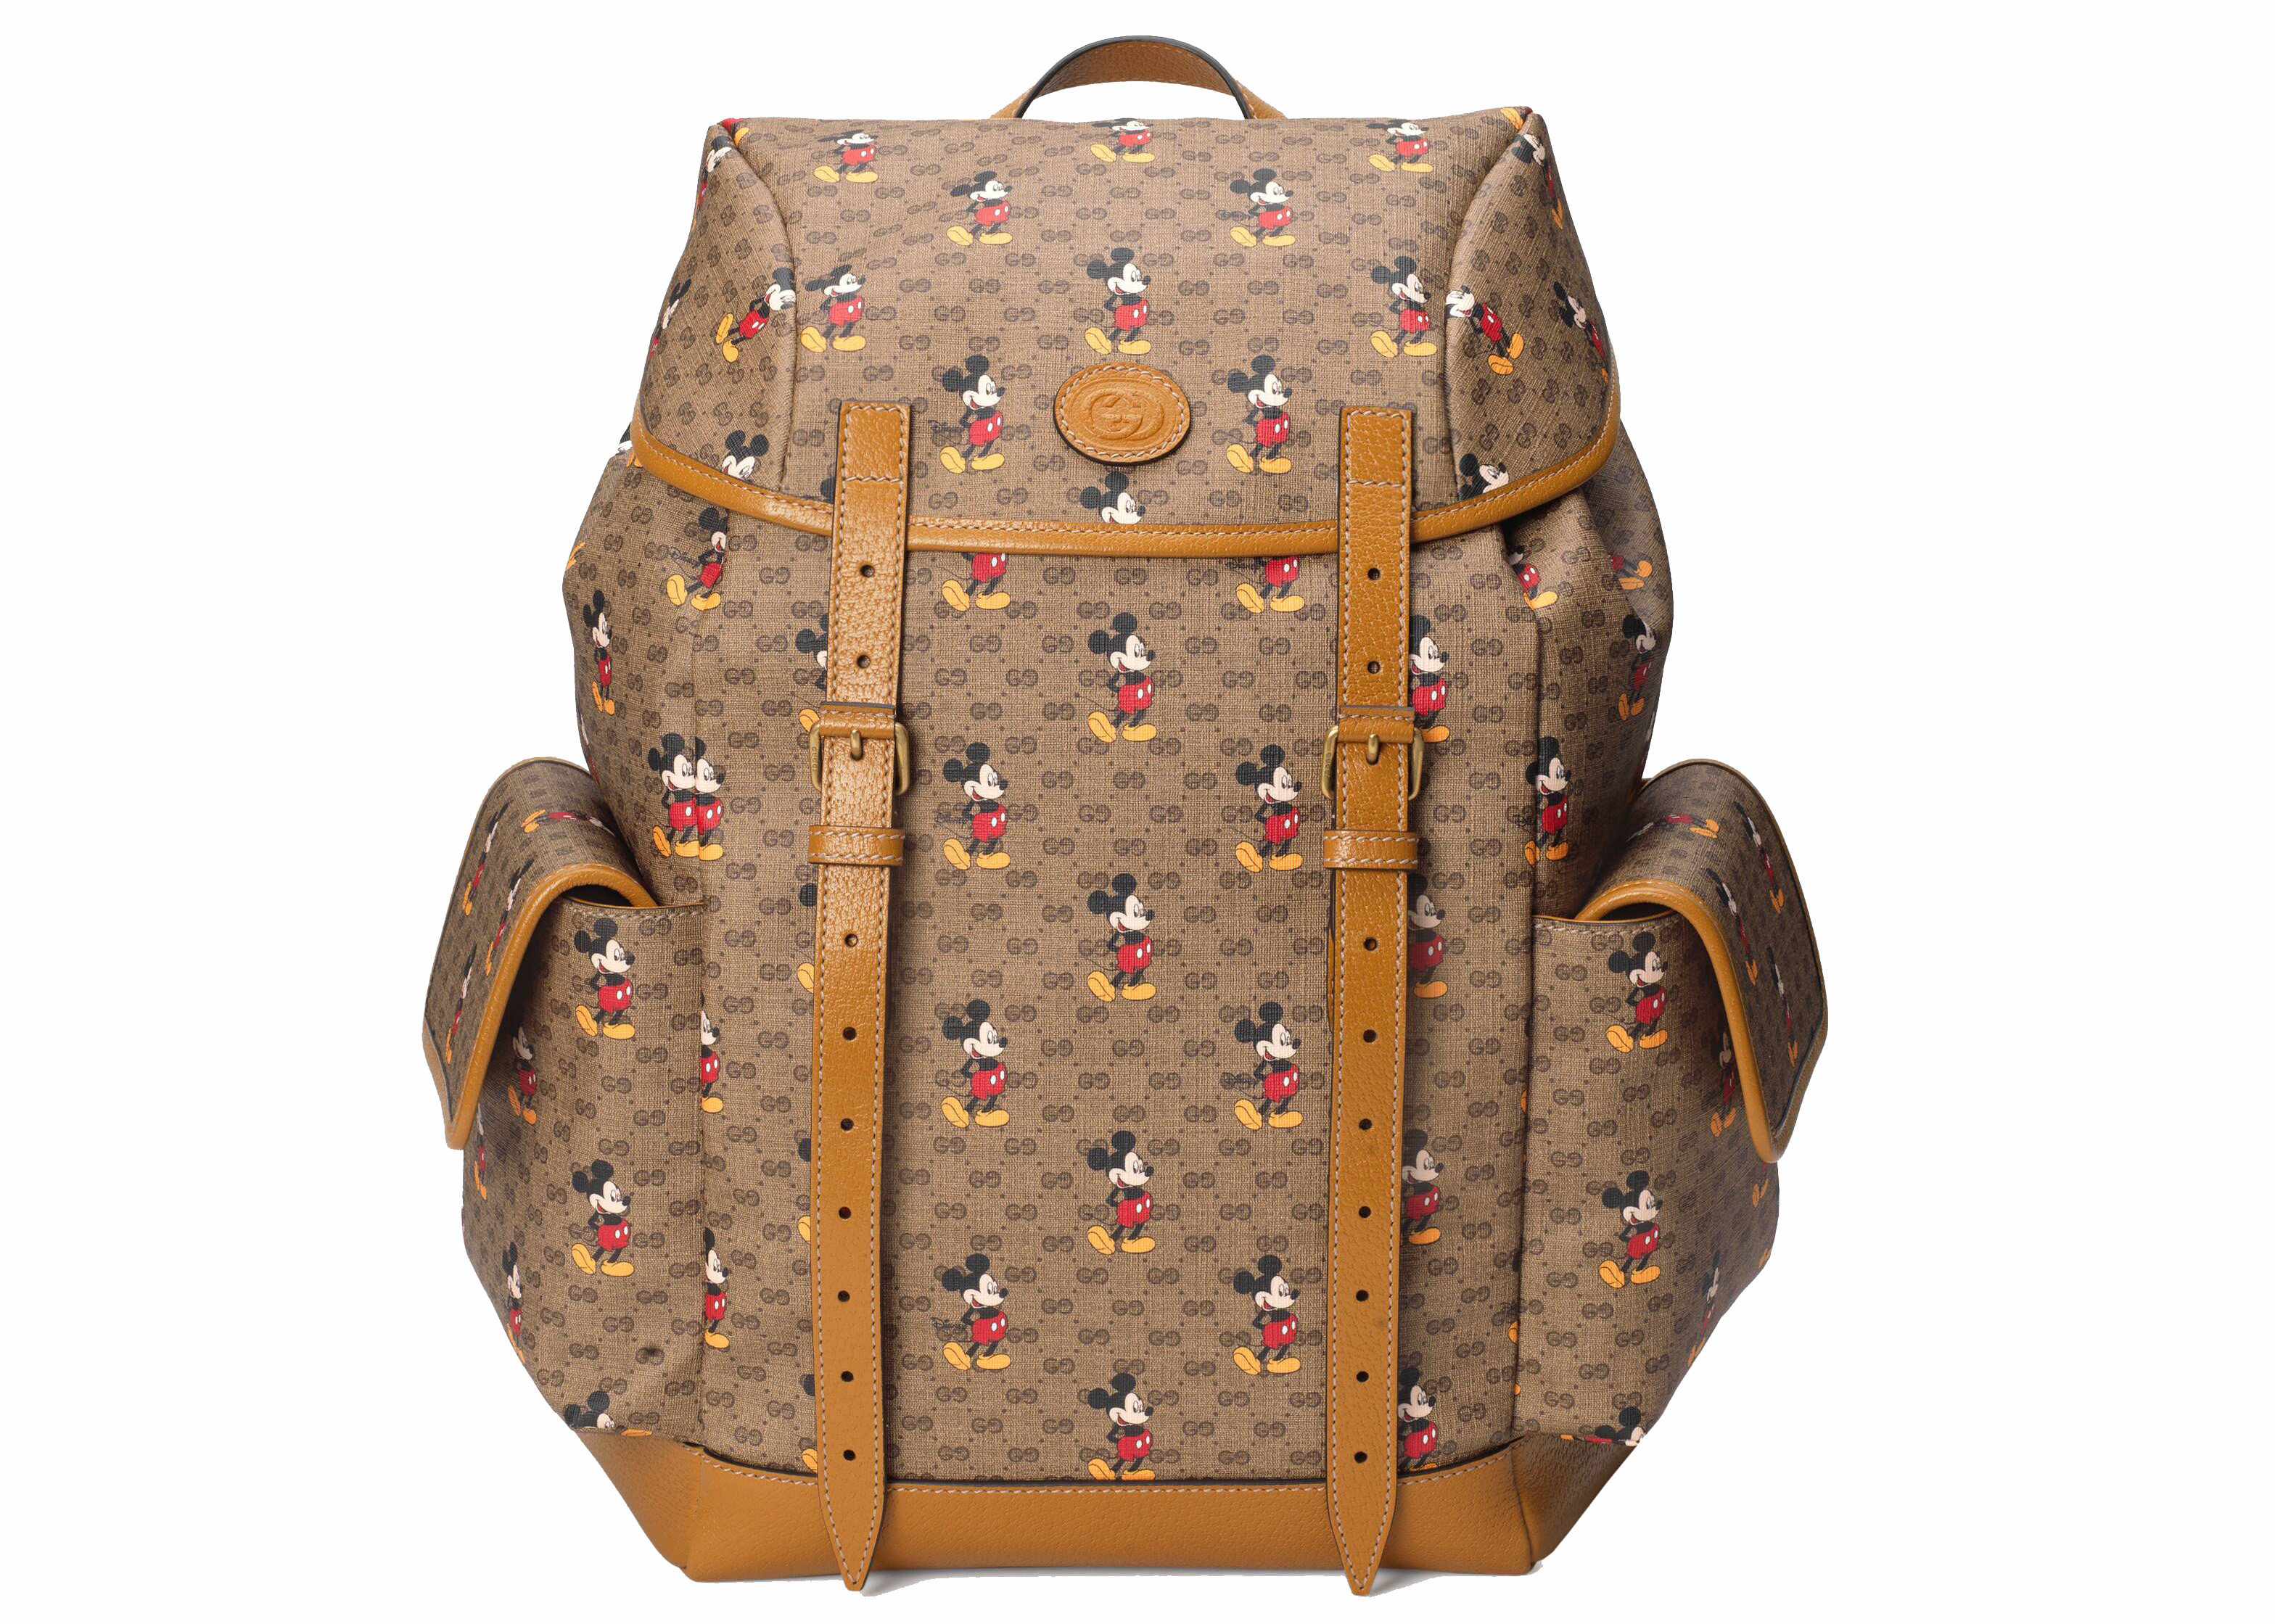 mini supreme backpack